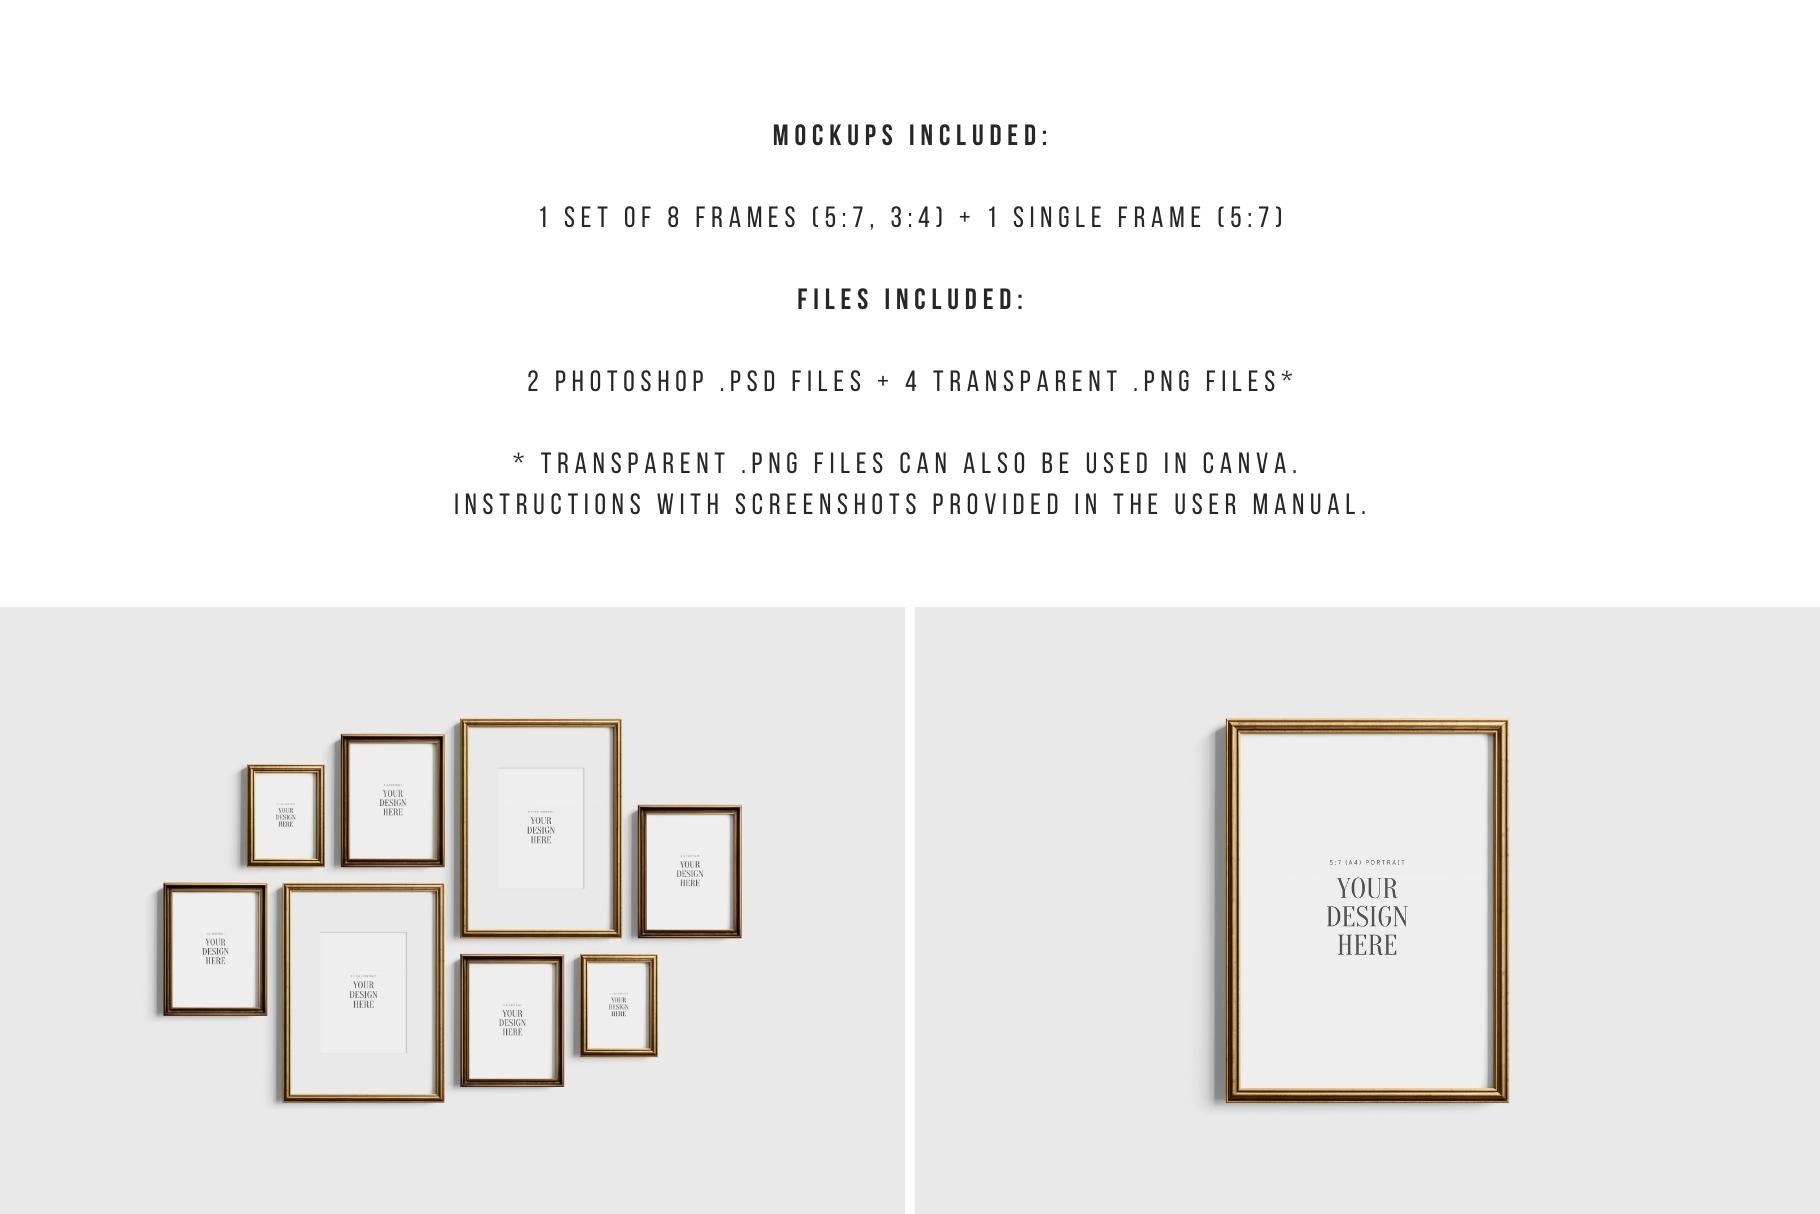 Gallery Wall Mockup | Metallic Frame Mockup Set of 8 Vertical Frames 5:7, 3:4 | Vintage Gold Frame Mockup Set | PSD Template + Transparent PNG Files